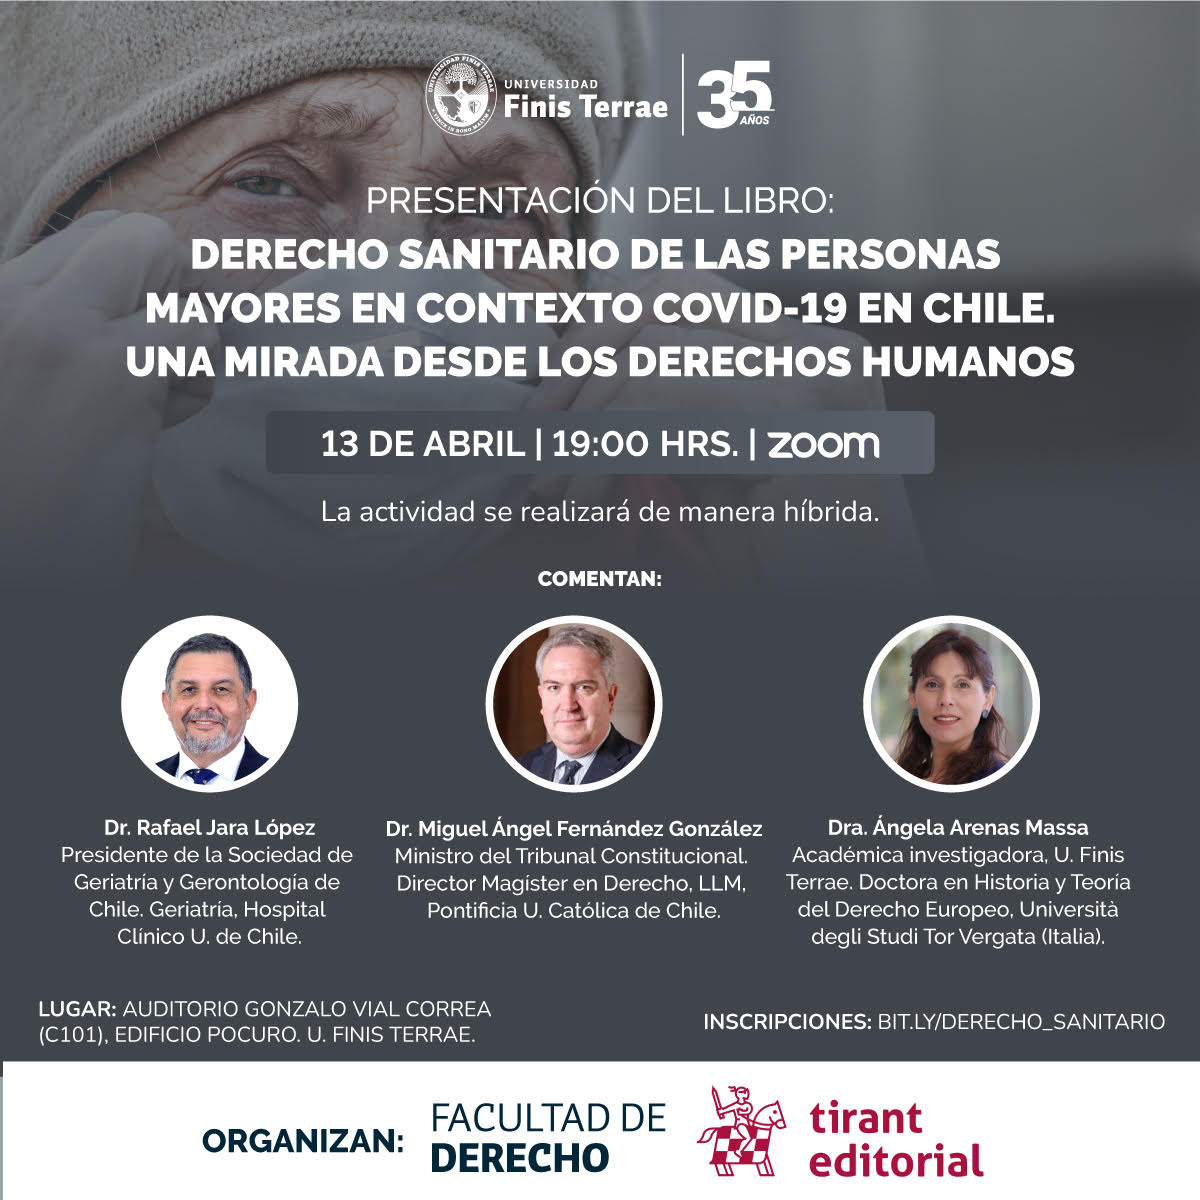 Facultad de Derecho U. Finis Terrae presenta este jueves el libro "Derecho sanitario de las personas mayores. Una mirada desde los derechos humanos"